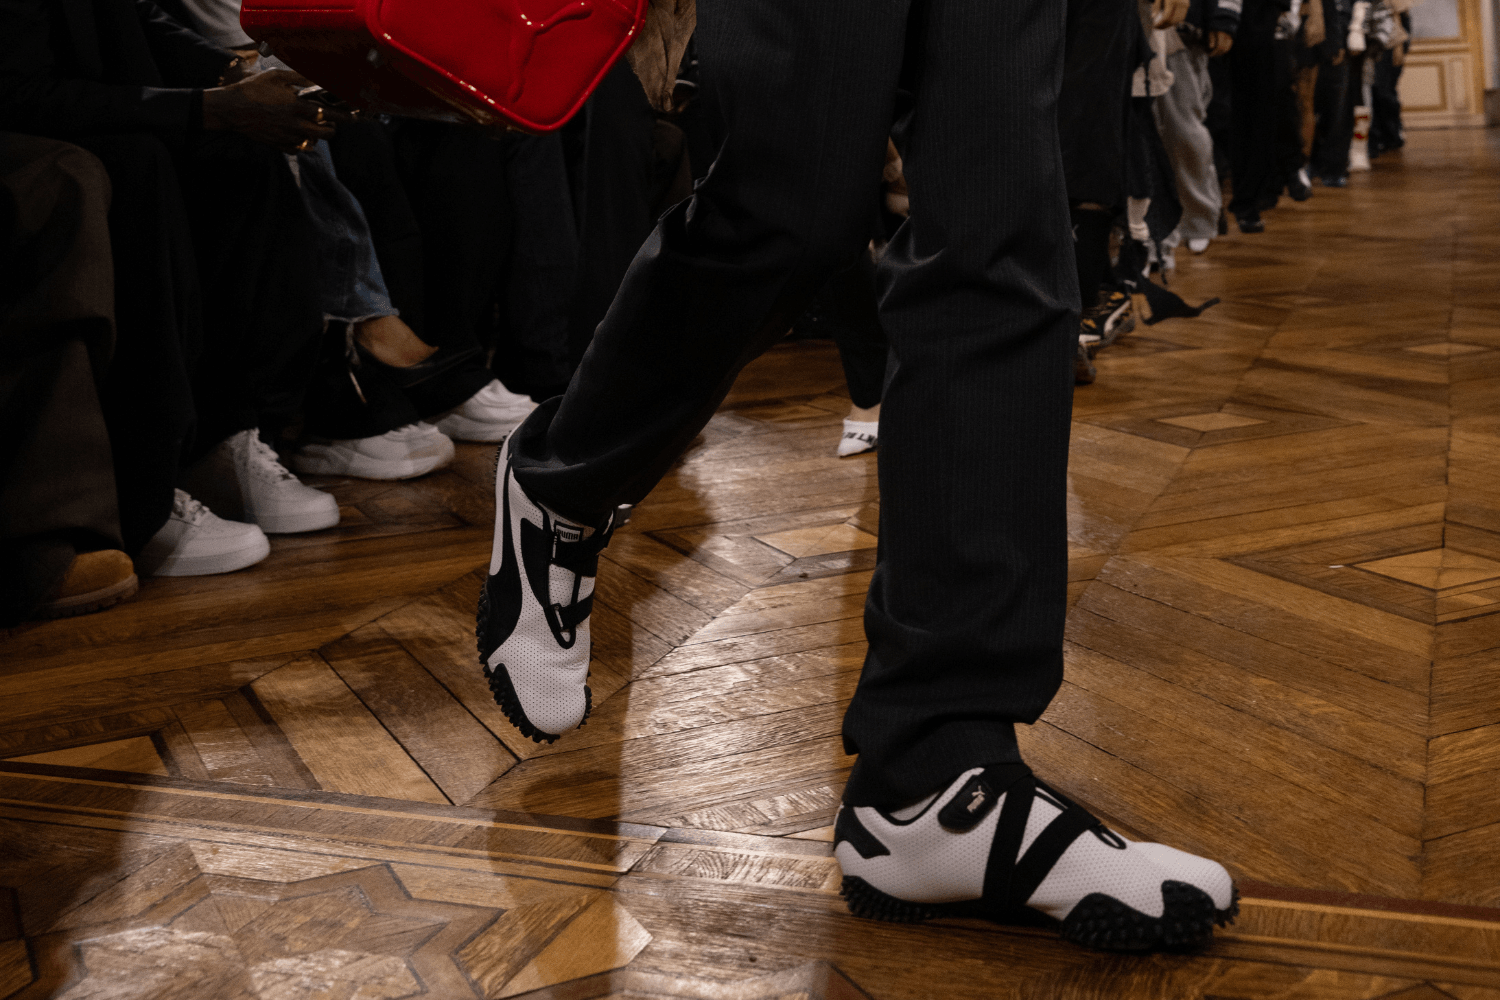 PUMA designs shown by A$AP Rocky during Paris Fashion Week